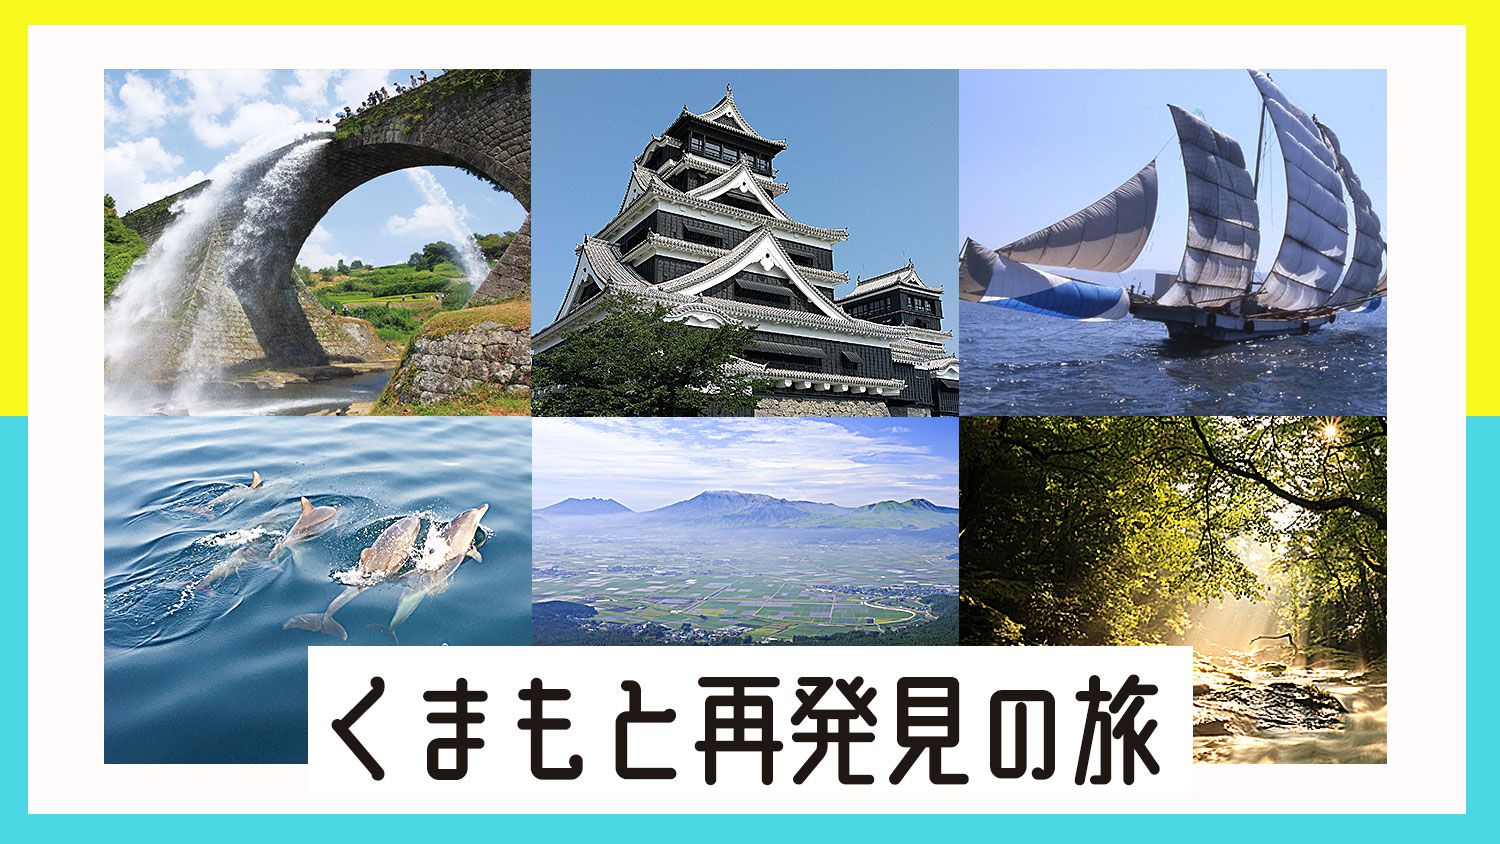 熊本 再 発見 の 旅 クーポン